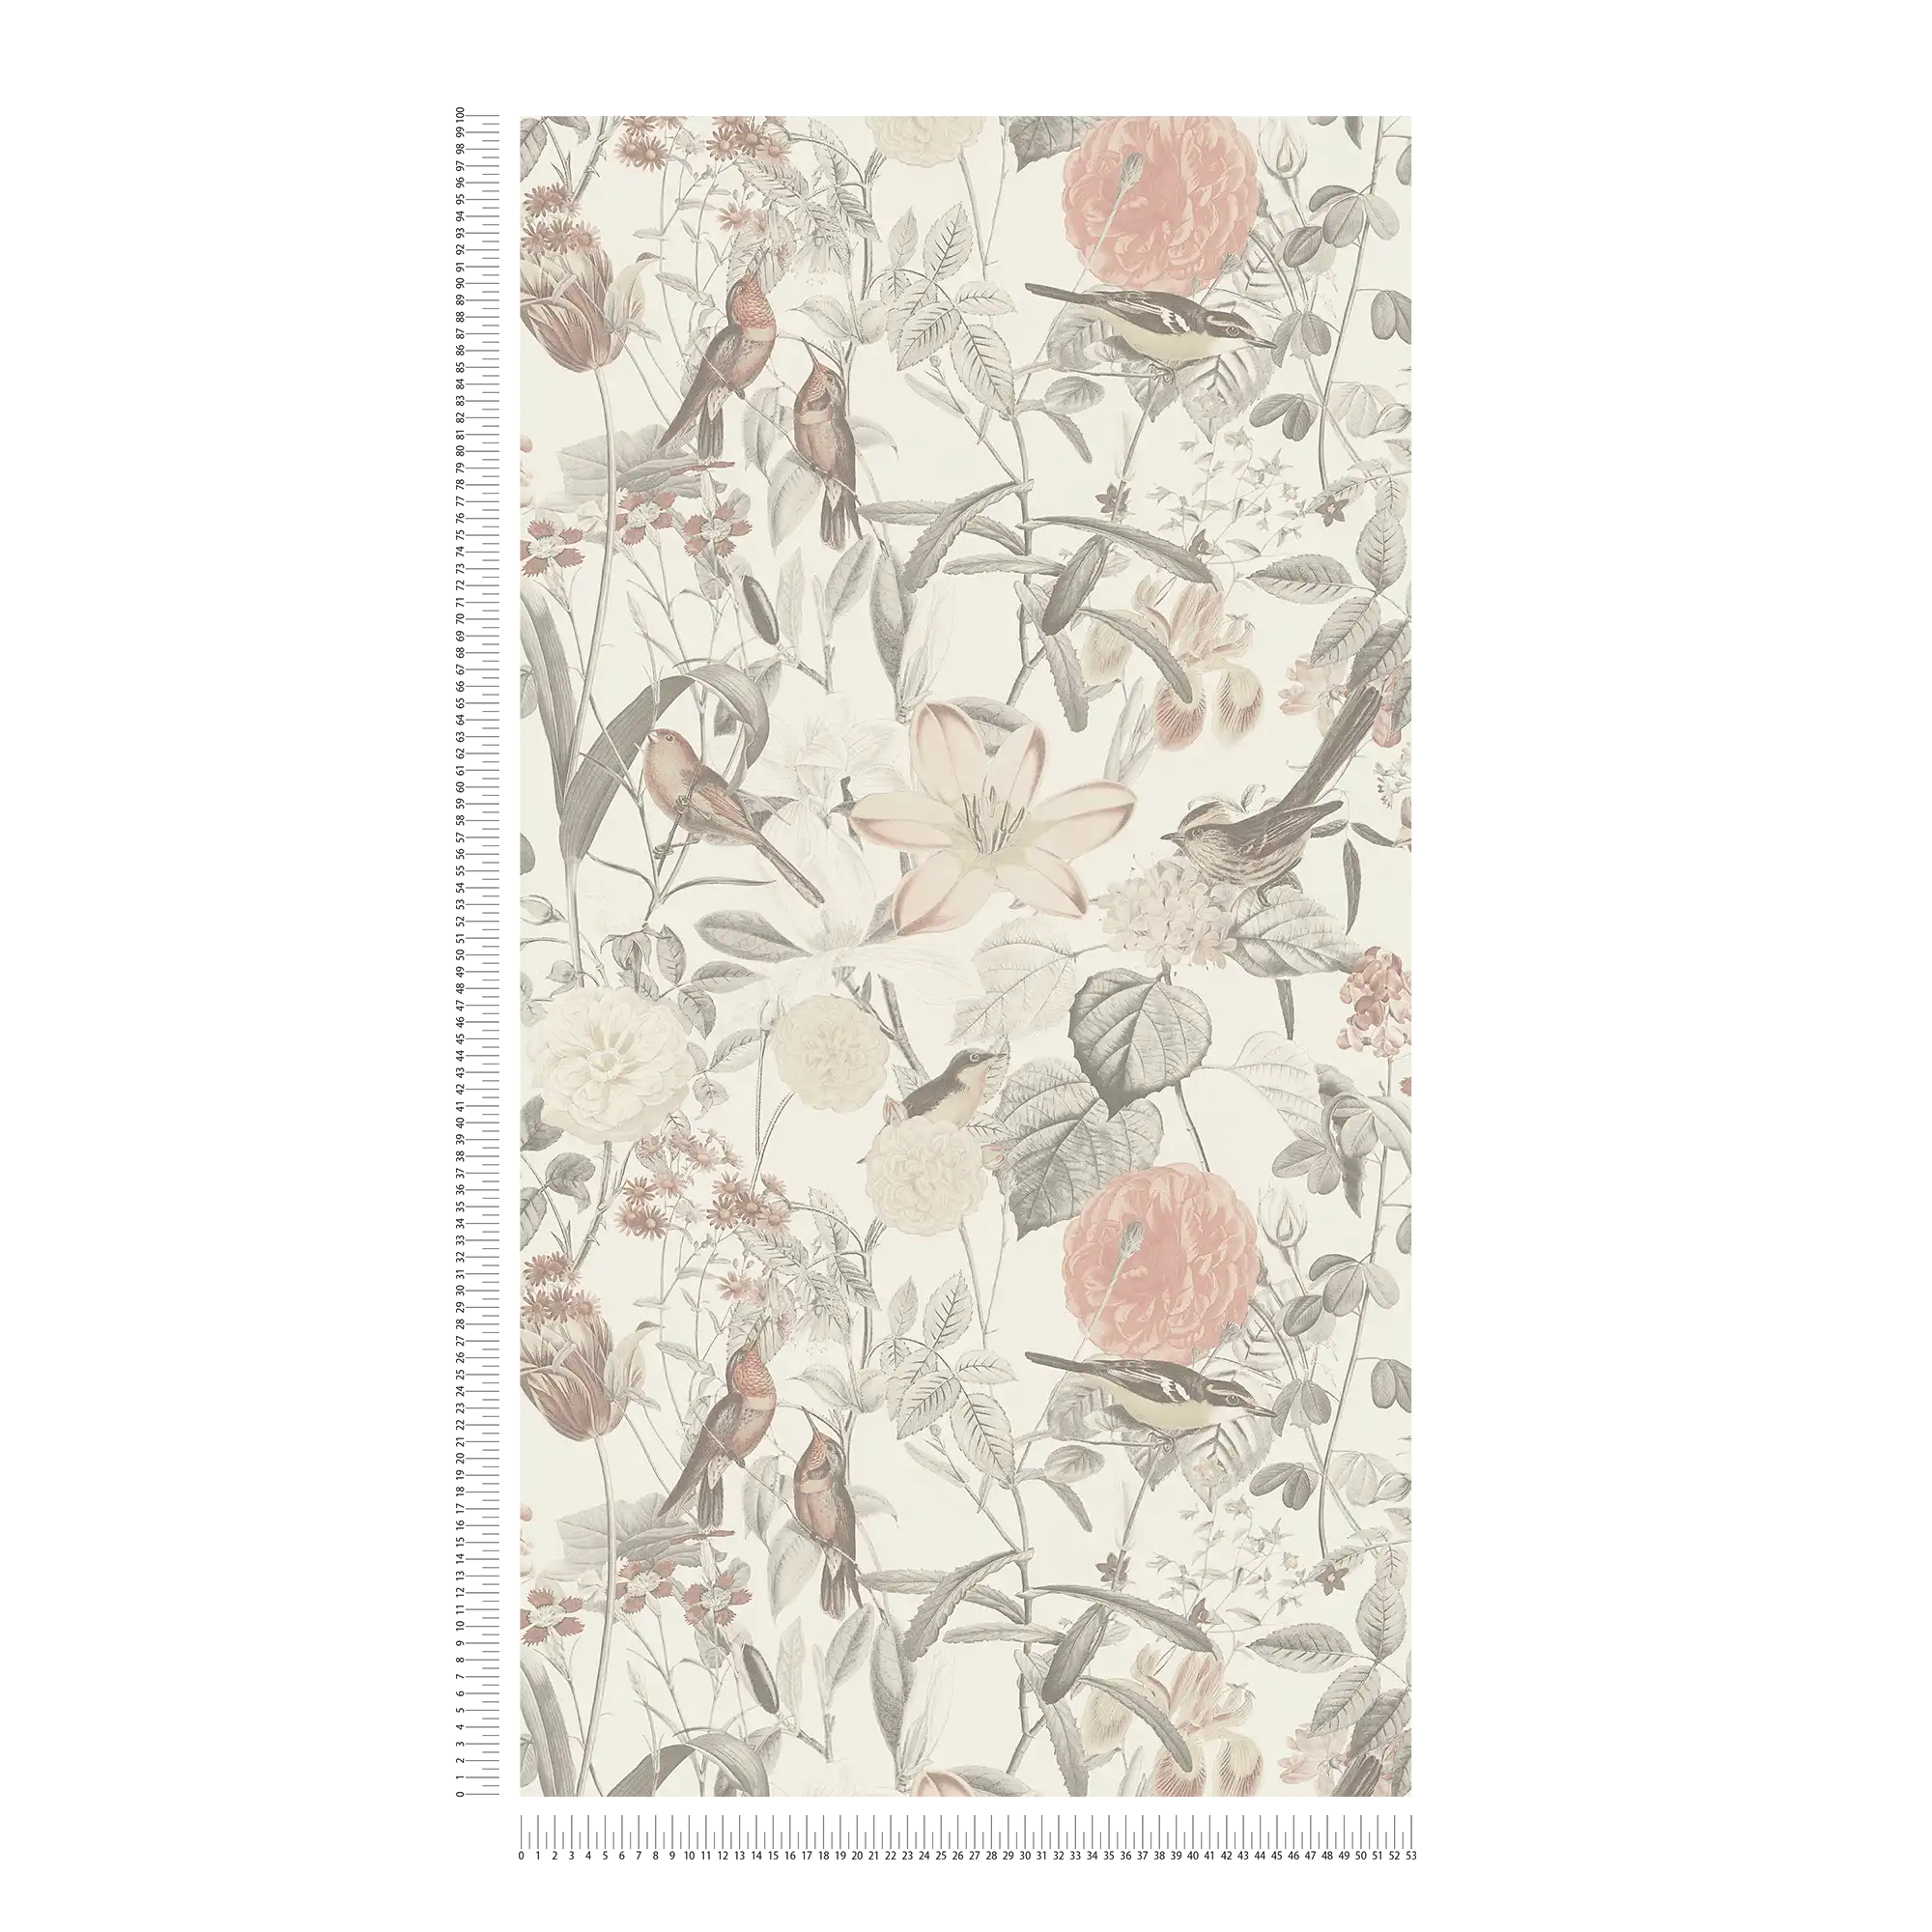             Tapete exotische Blüten & Vogel-Motiv – Grau, Rosa, Orange
        